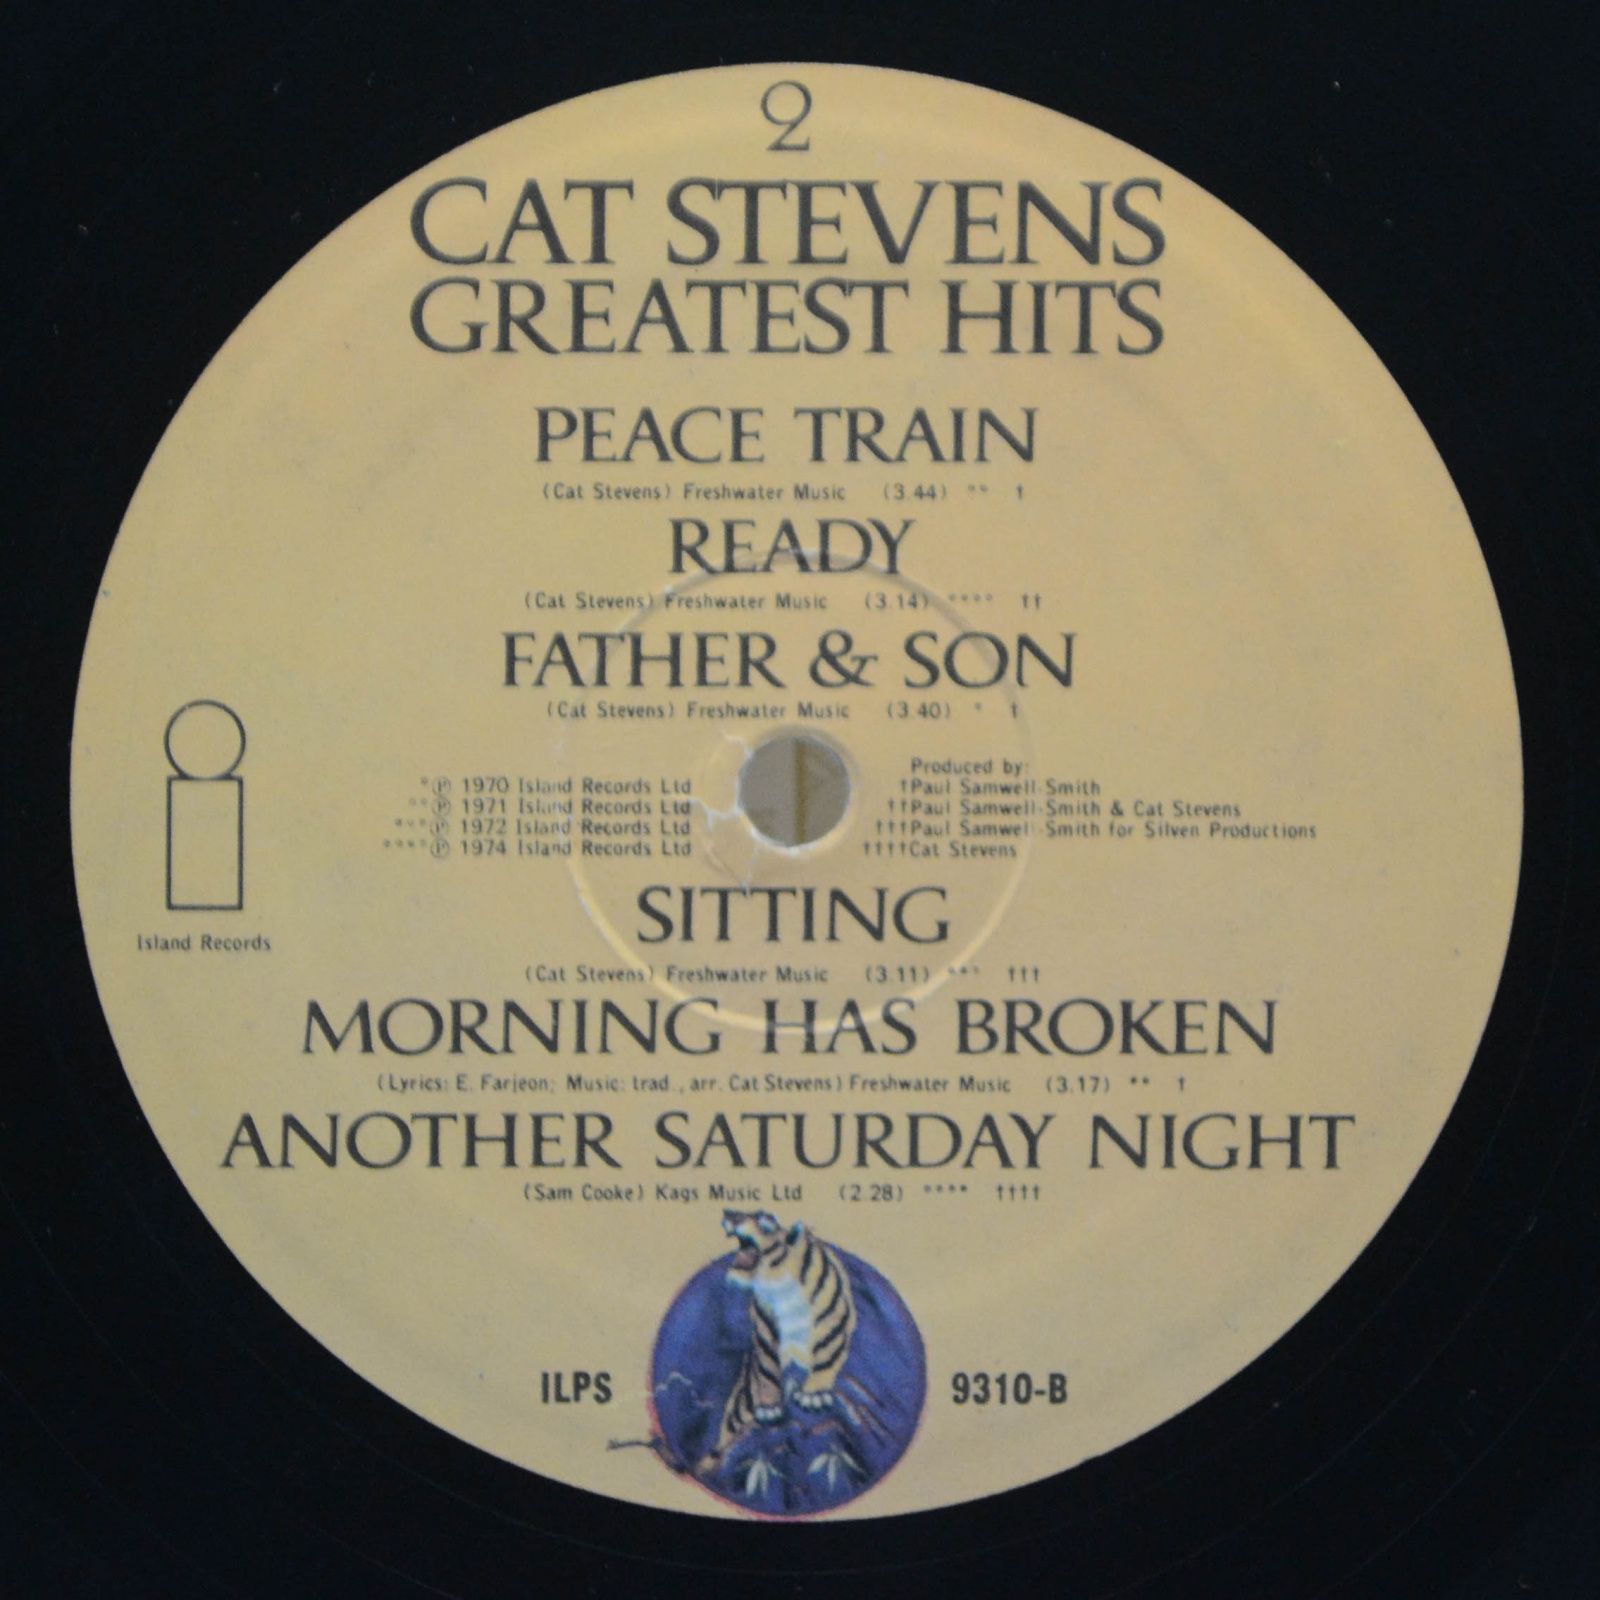 Cat Stevens — Greatest Hits (UK), 1975